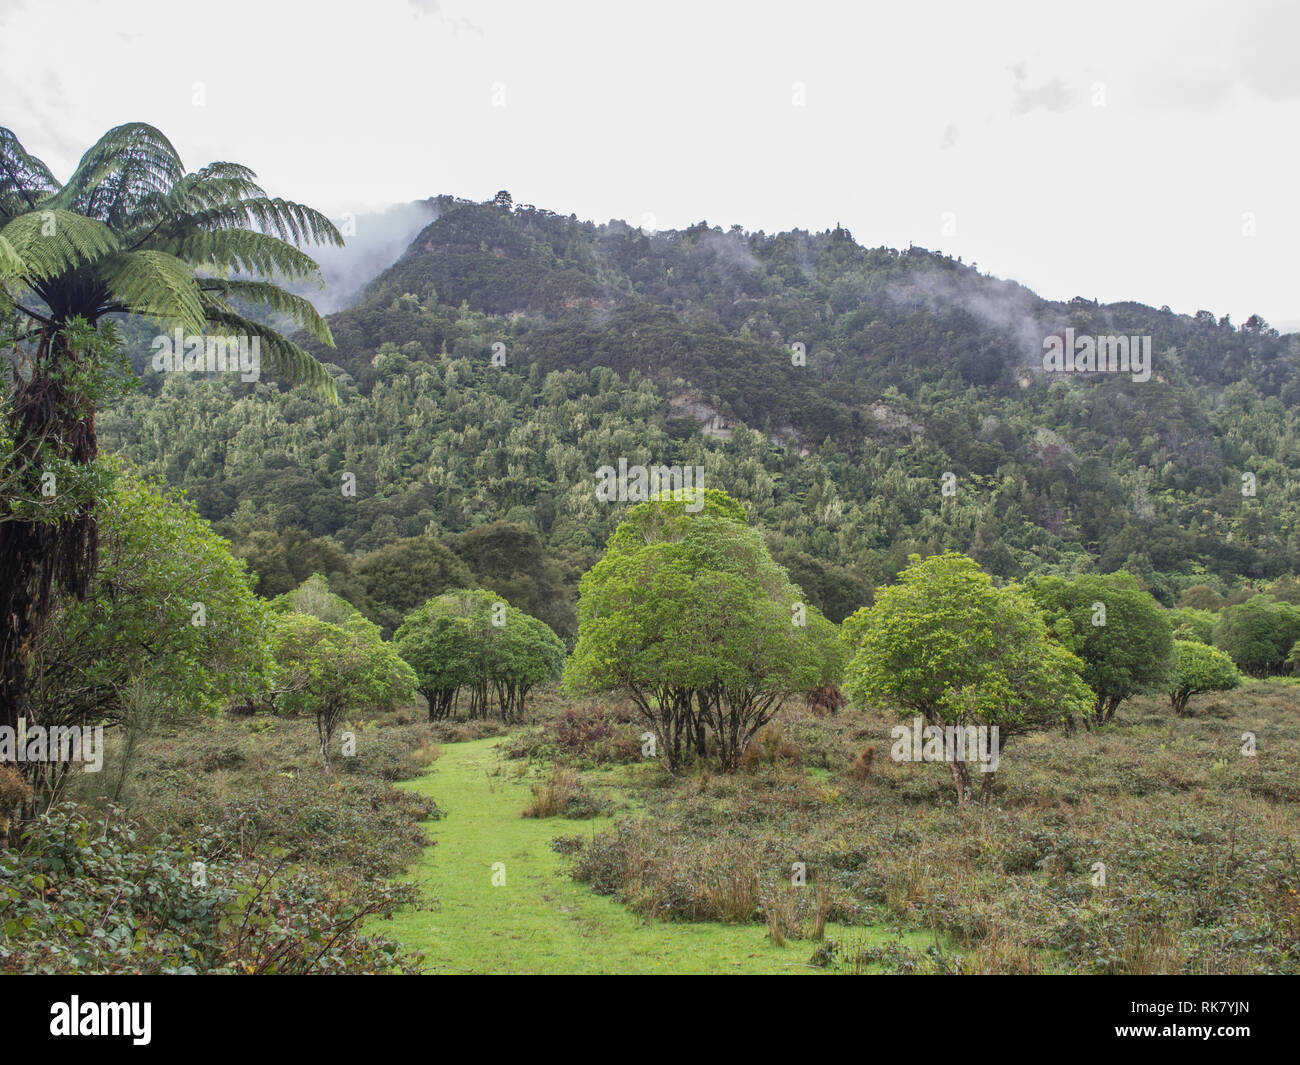 Percorso erboso attraverso la rigenerazione di arbusti, di nebbia in aumento dopo la pioggia, foresta nativa bush colline rivestite al di là, Ahuahu Valle del fiume Whanganui Nuova Zelanda Foto Stock